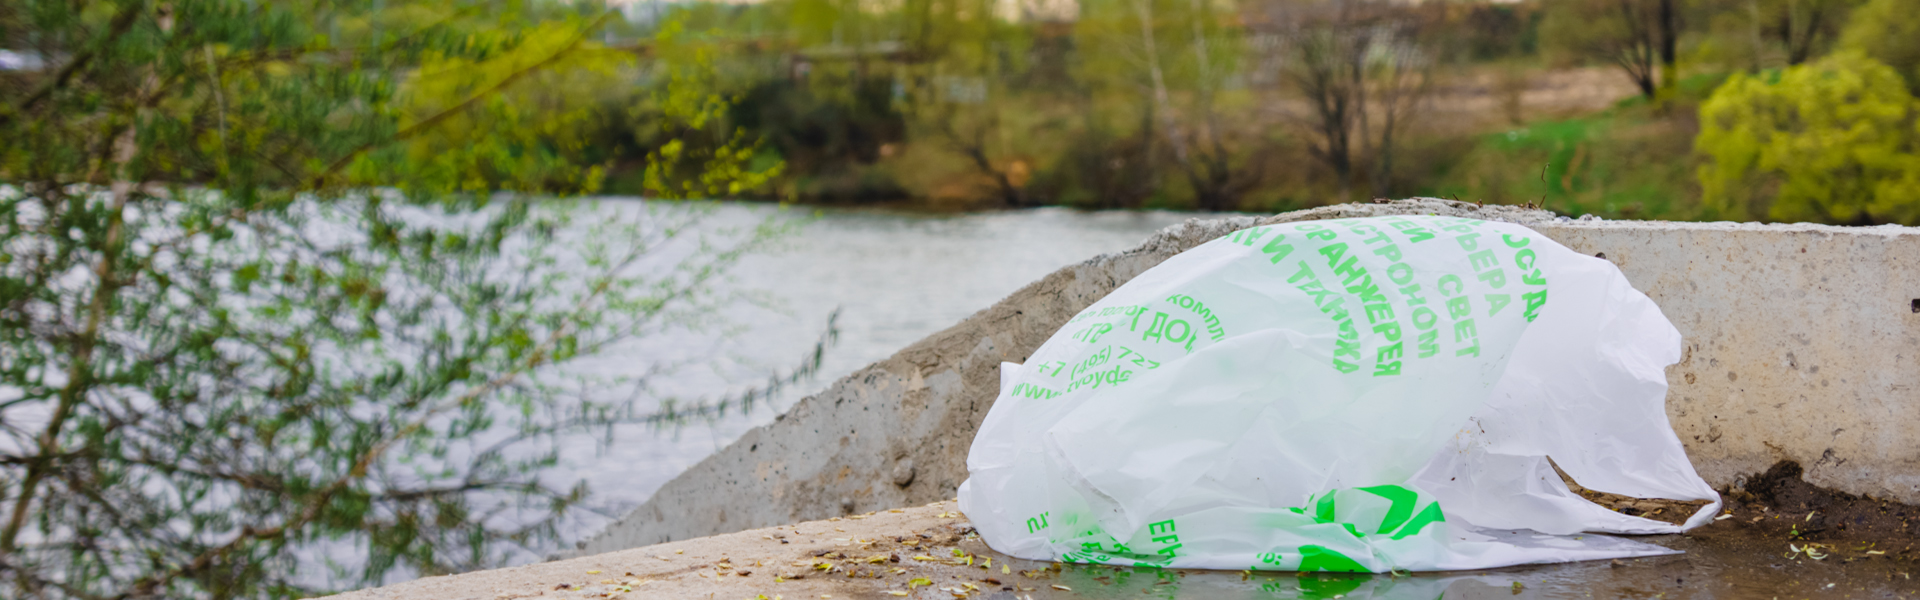 мусор- переработка пластиковых пакетов